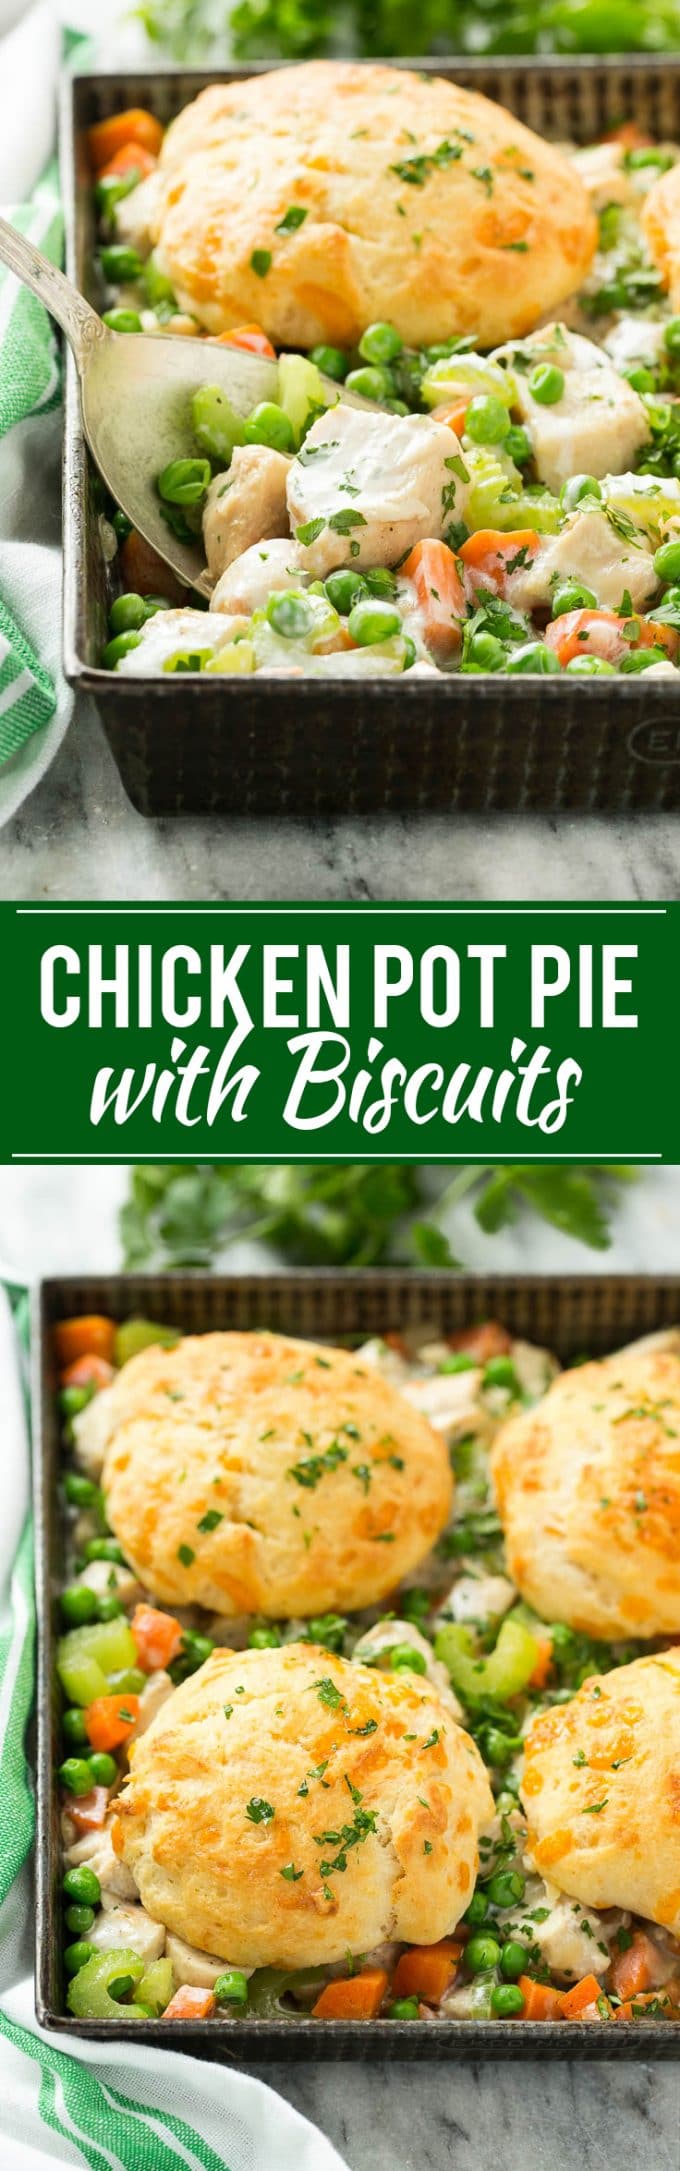 Biscuit Chicken Pot Pie Recipe | Easy Chicken Pot Pie | Best Chicken Pot Pie | Creamy Chicken Pot Pie